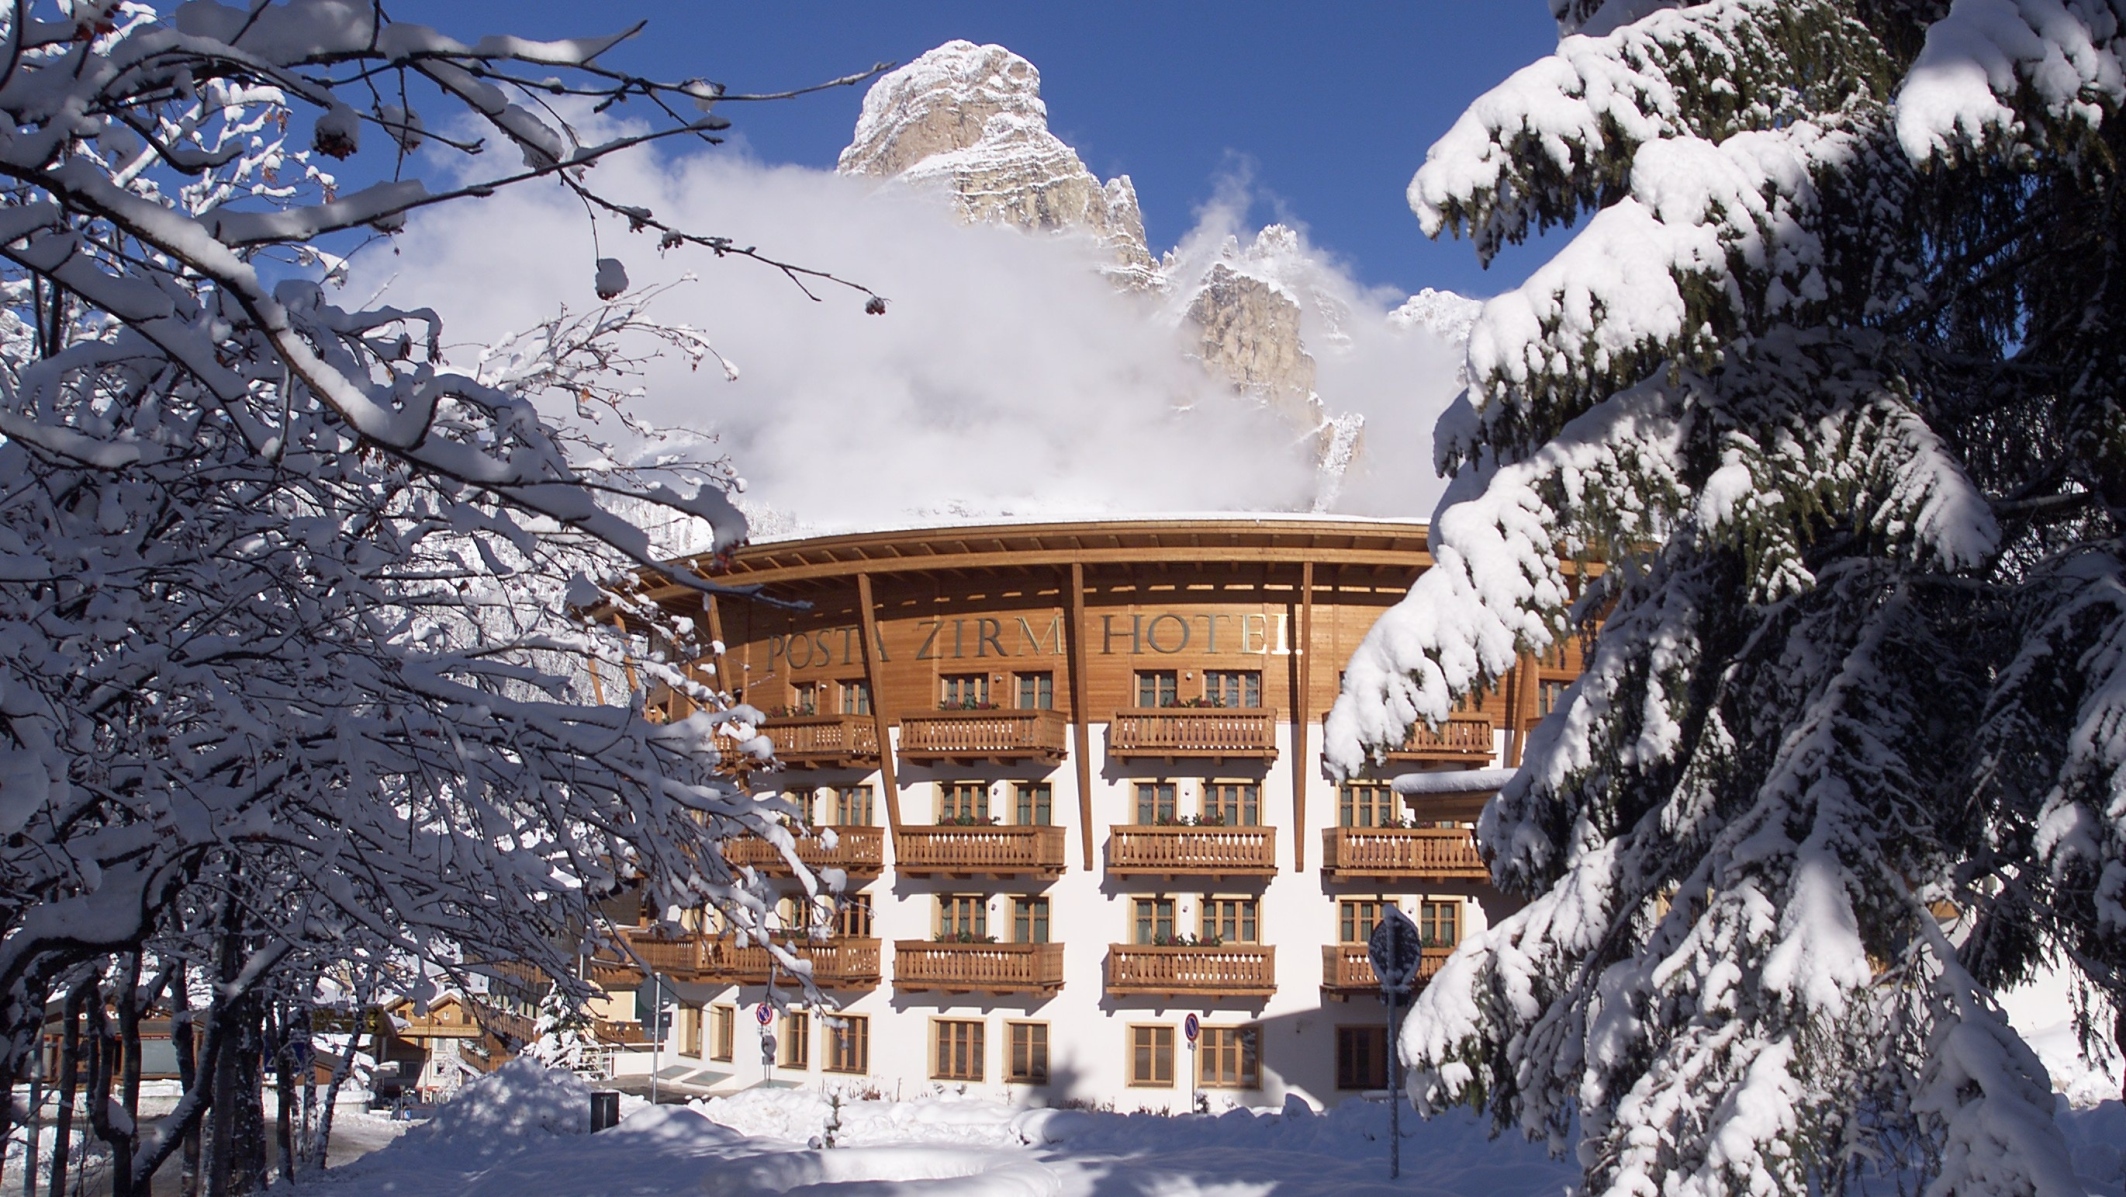 Dolomiti Super Sun al Posta Zirm Hotel di Corvara in Val Badia. In marzo le (ultime) sciate sono ancora più convenienti